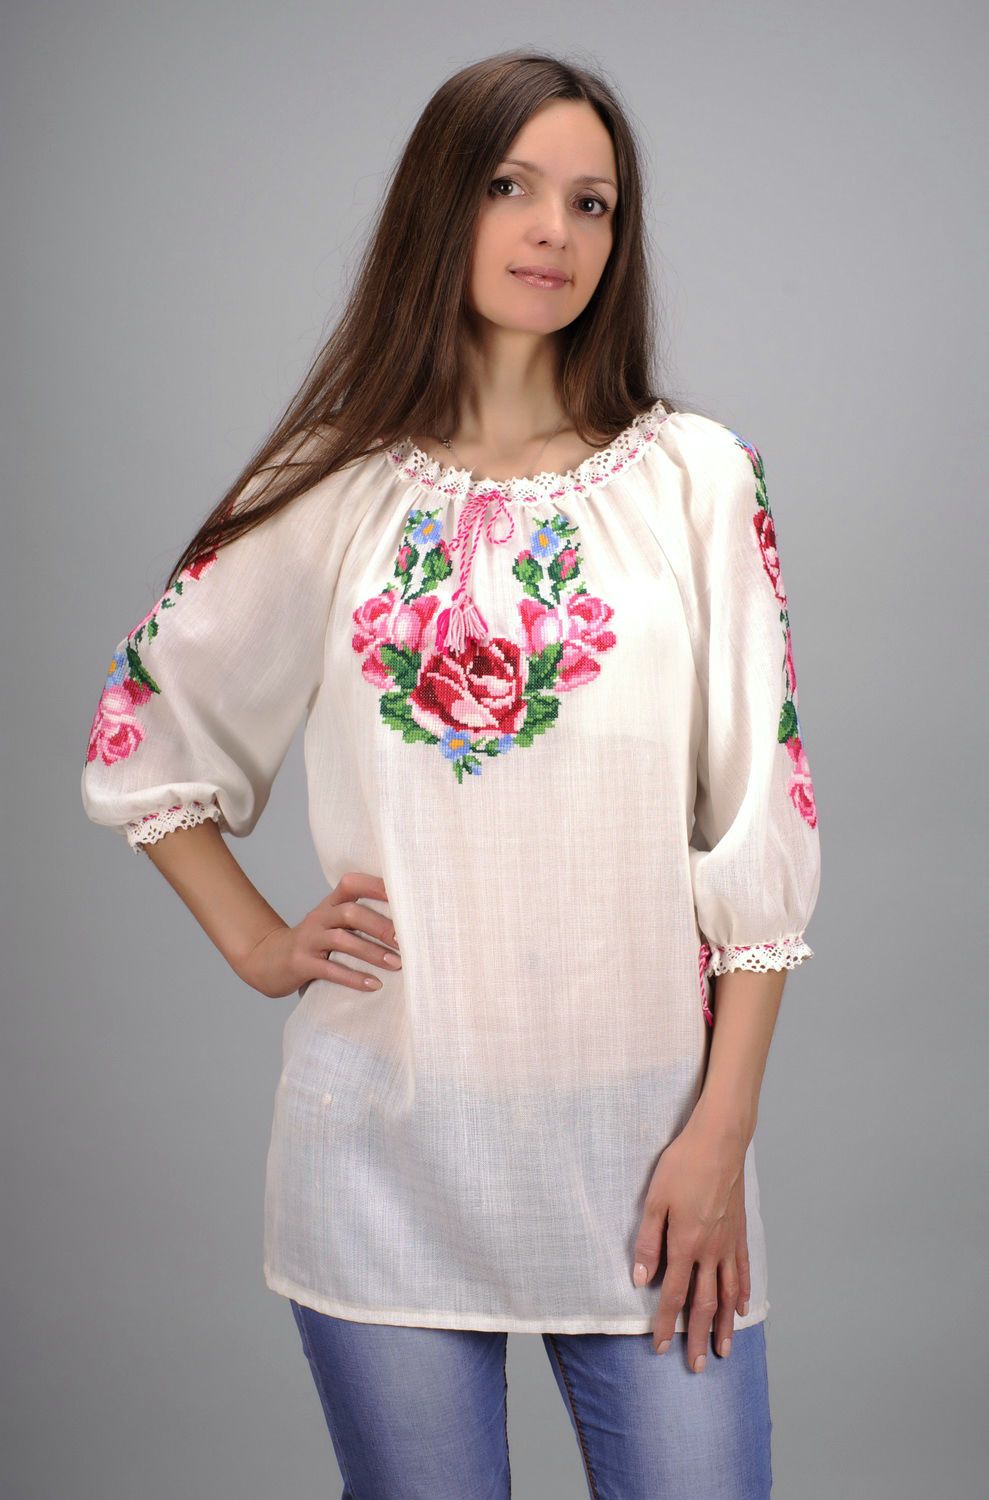 Этническая блуза Вышиванка с розами фото 1